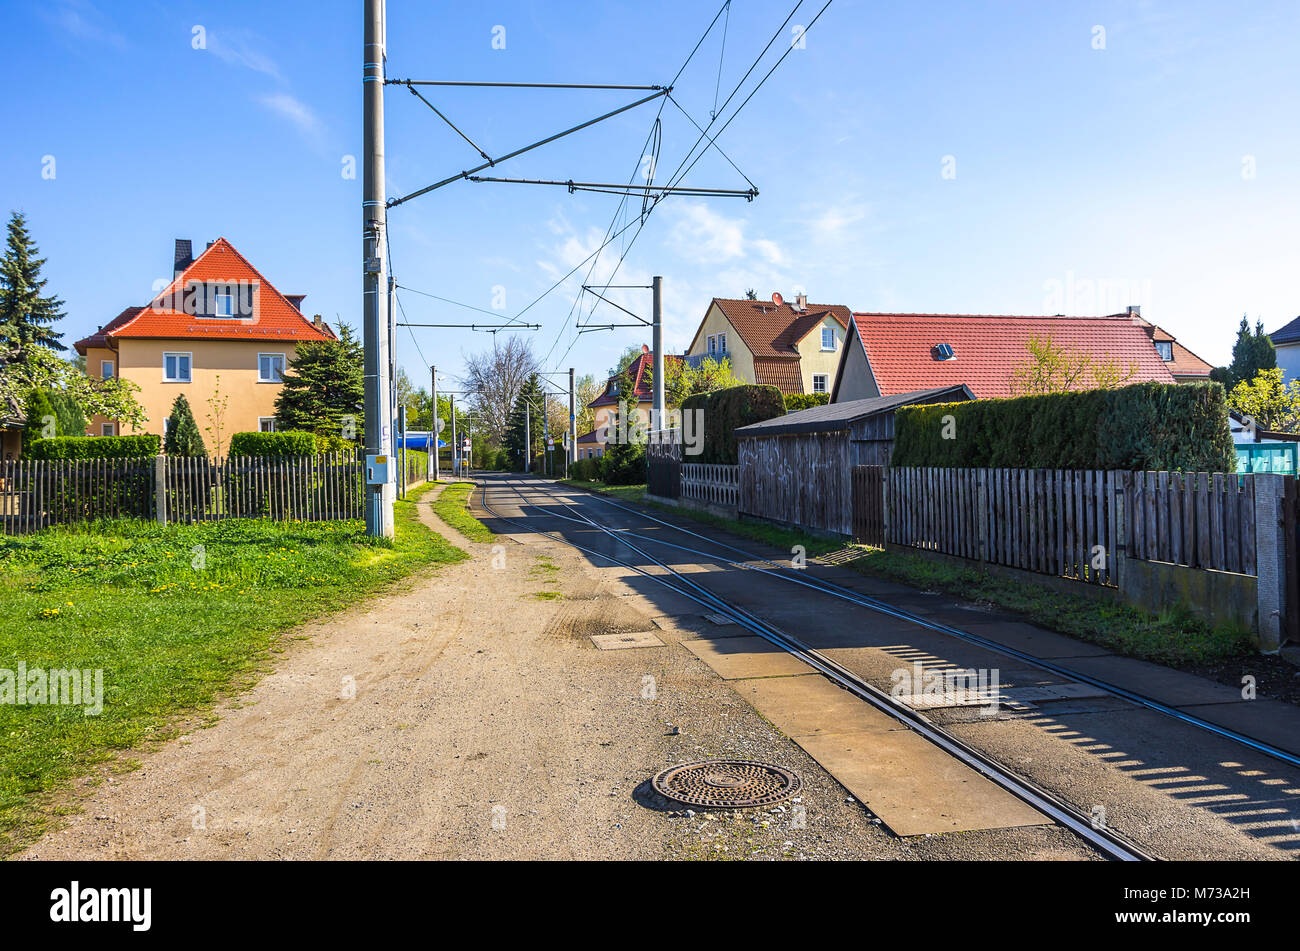 Straßenbahnschienen und Wohngebiet in Weixdorf bei Dresden, Sachsen, Deutschland. Stockfoto